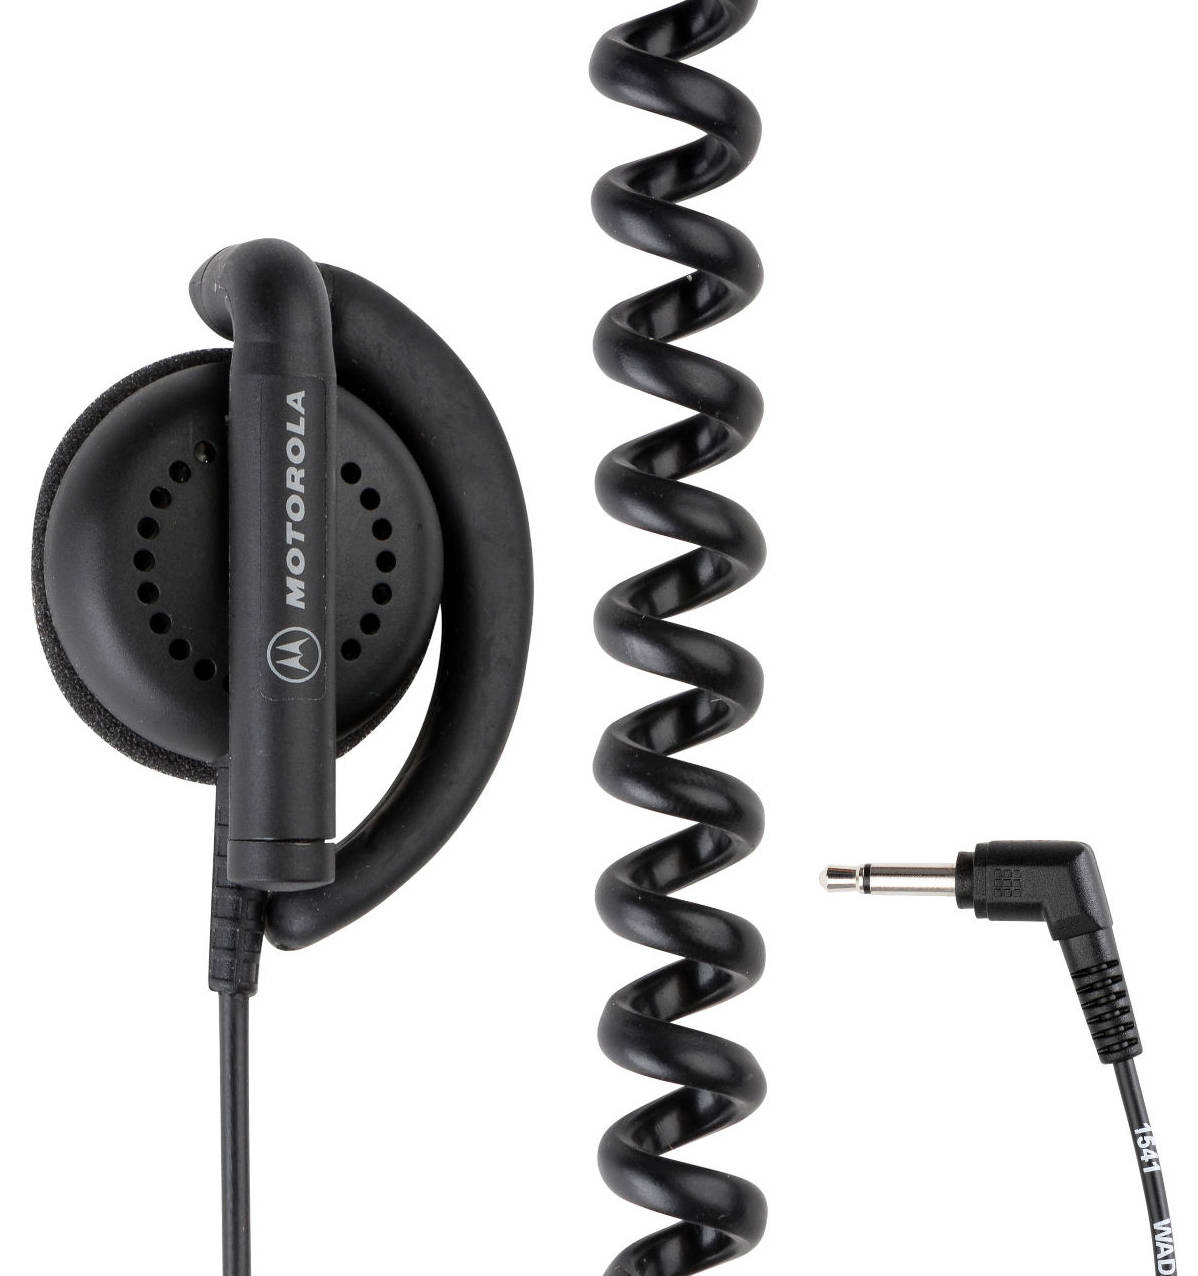 Motorola Über-Ohr Empfänger für RSM WADN4190B